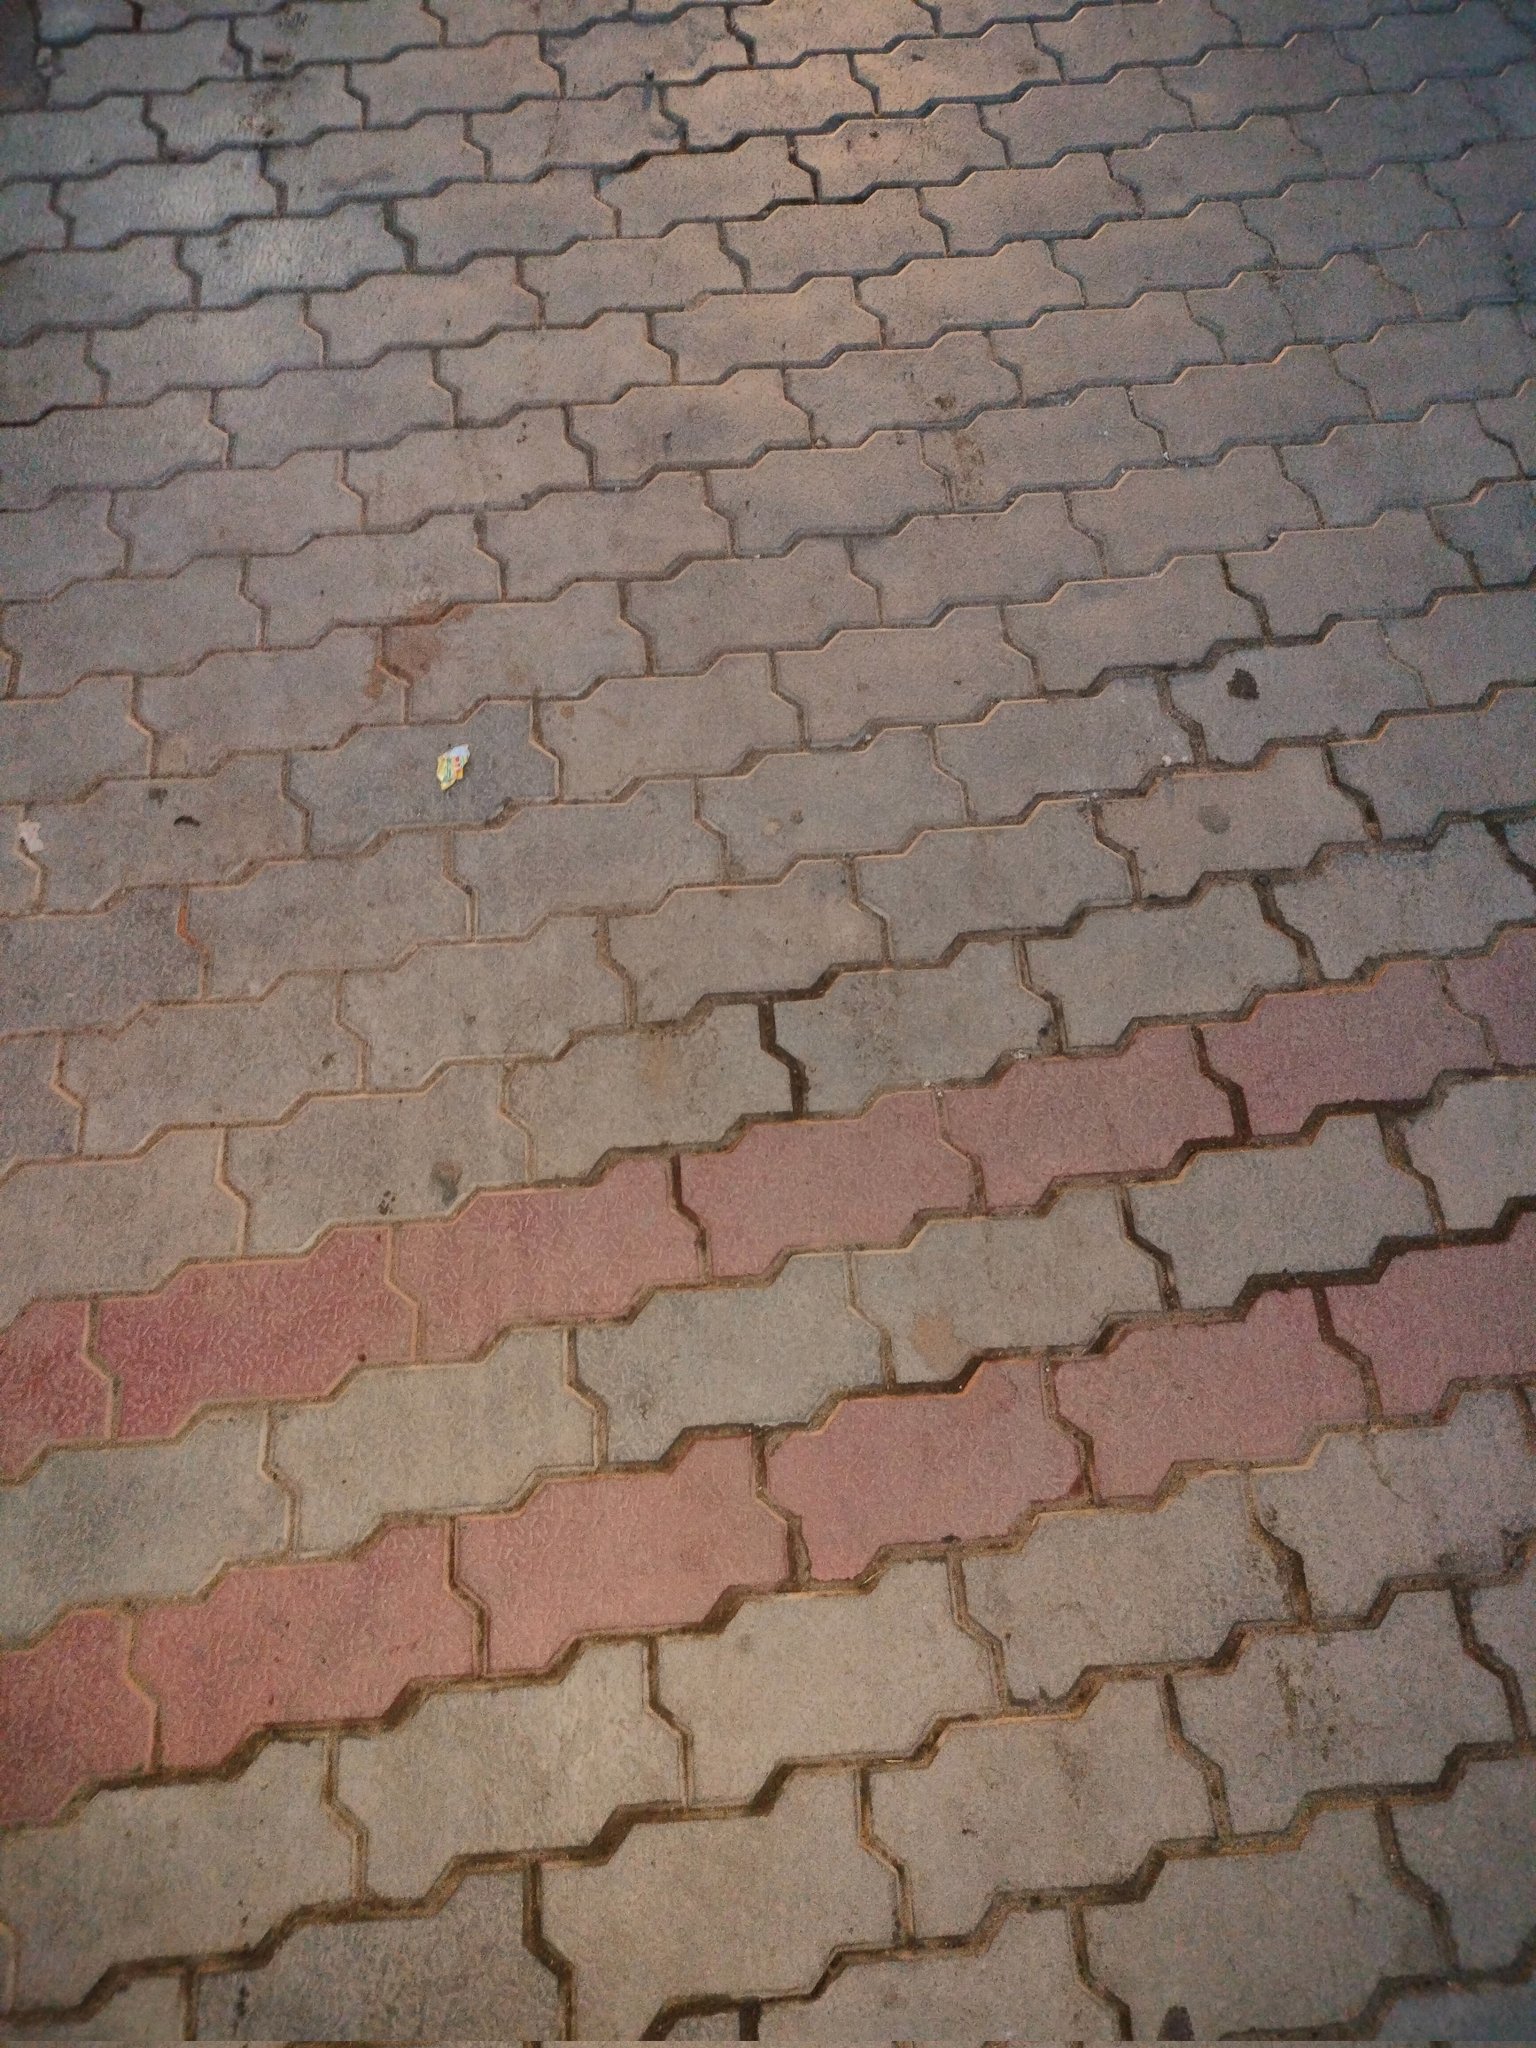 Tiled roads